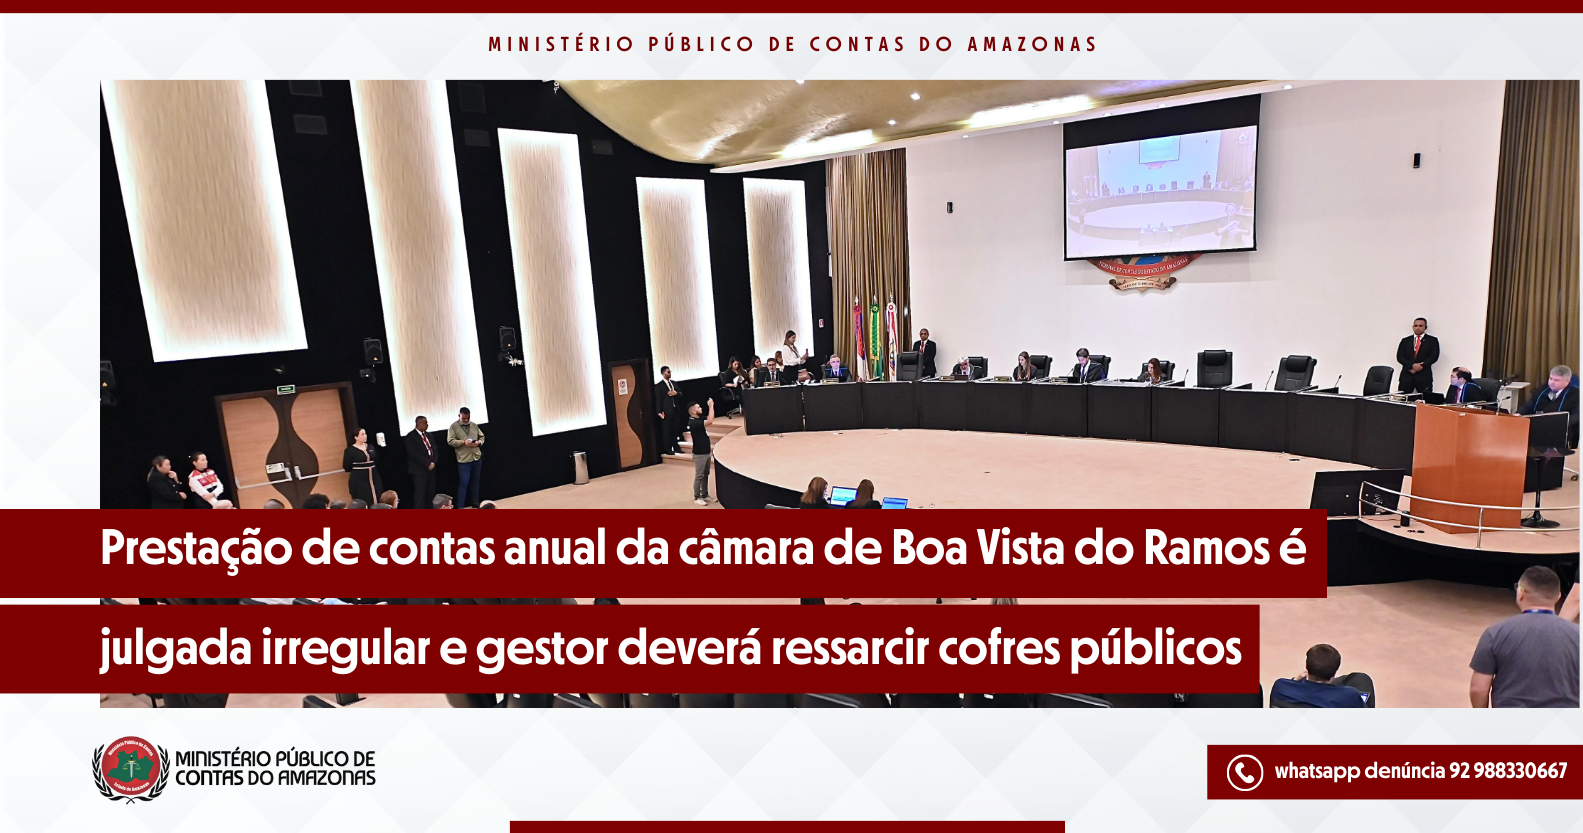 Prestação de contas anual da câmara de Boa Vista do Ramos é julgada irregular e gestor deverá ressarcir aos cofres públicos